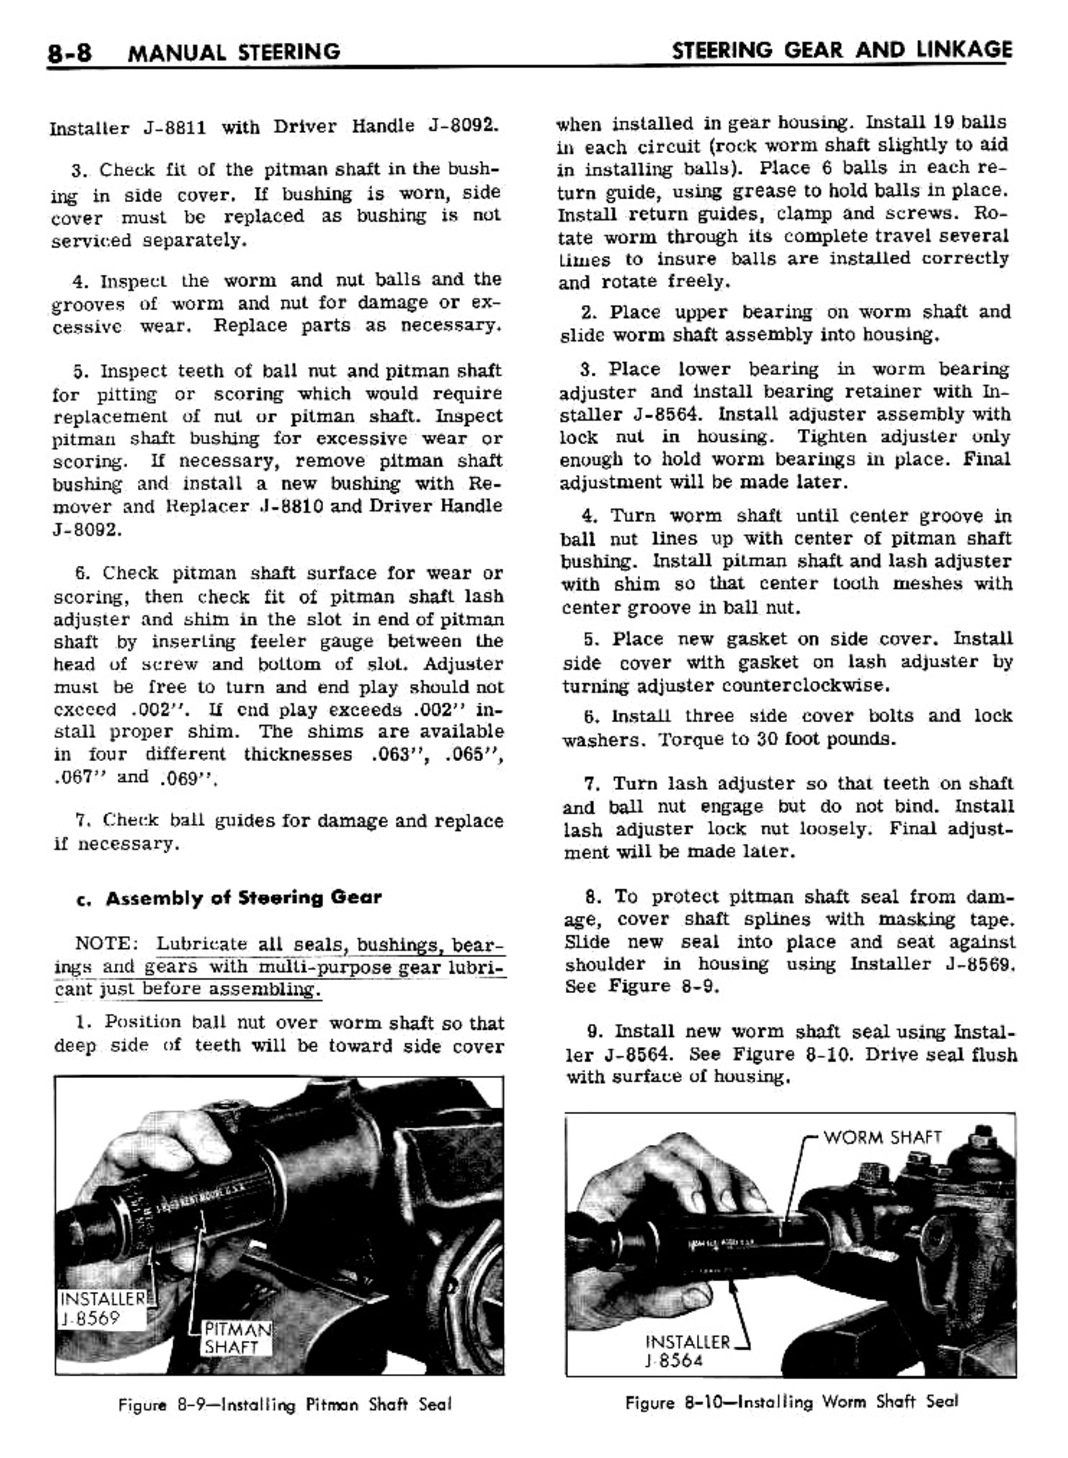 n_08 1961 Buick Shop Manual - Steering-008-008.jpg